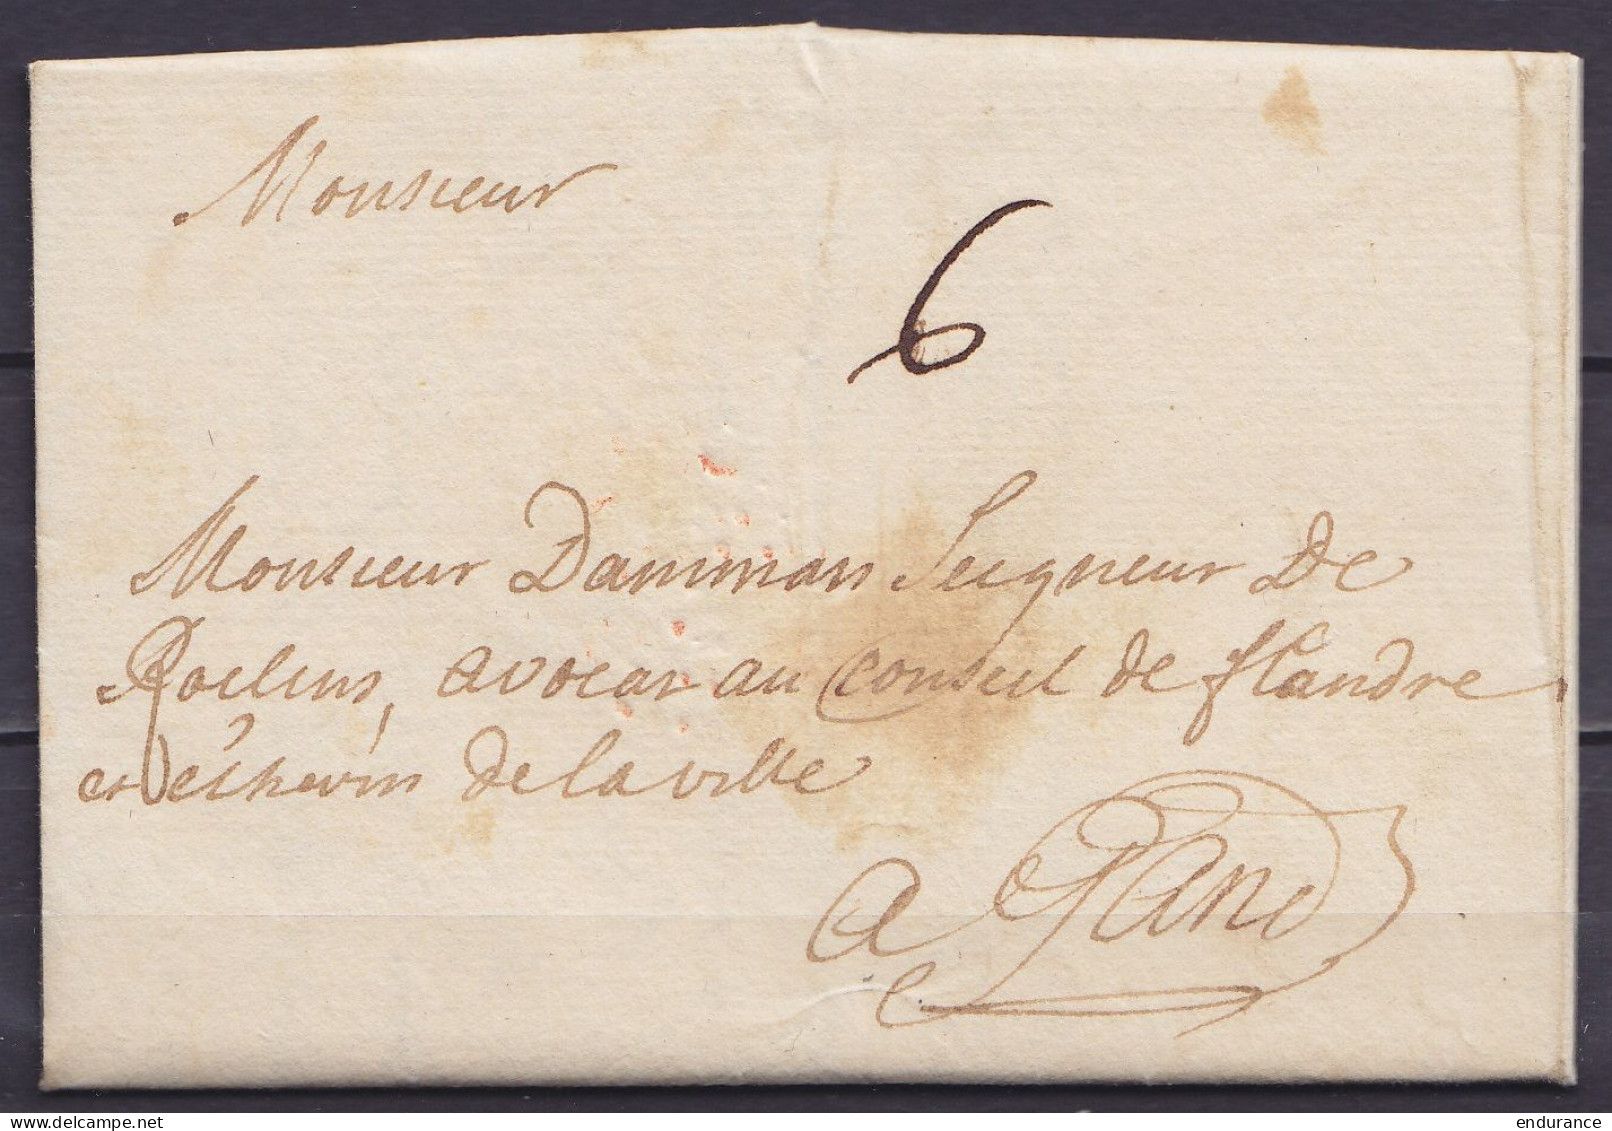 L. Datée 1e Août 1742 De MAESTRICHT Pour GAND - Port "6" - 1714-1794 (Paises Bajos Austriacos)